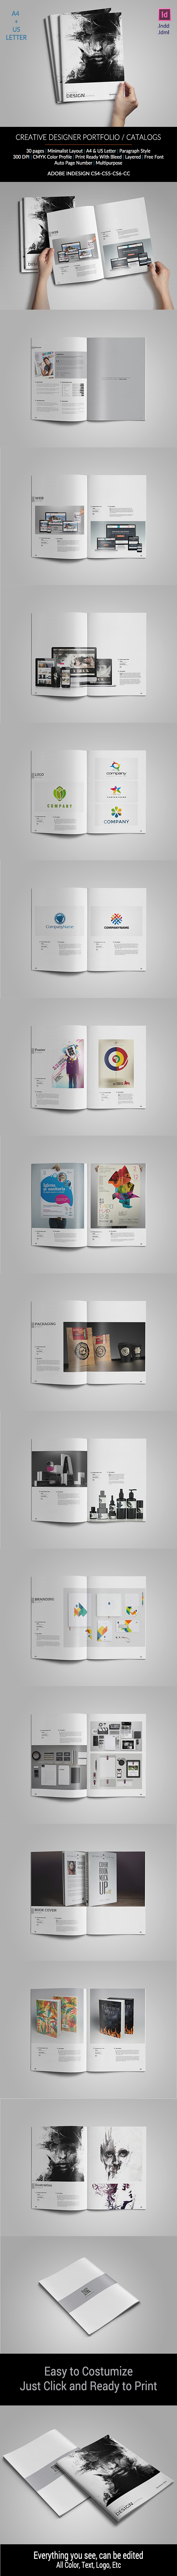 print template graphic designer portfolio Portfolio template template Graphic Designer